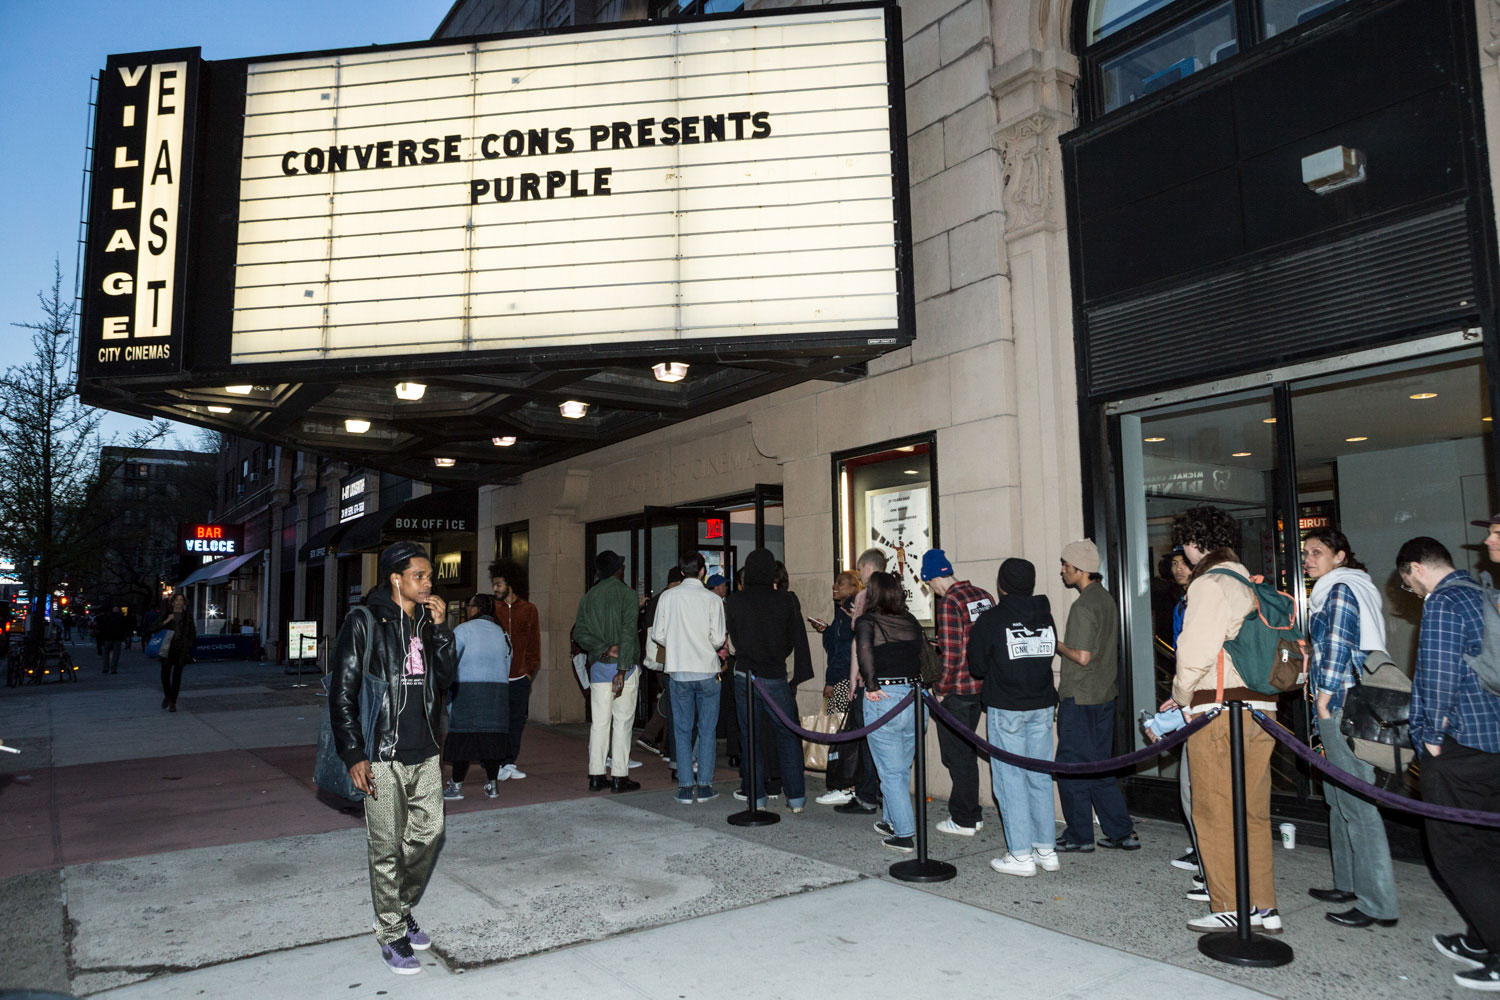 Uden at tilbagetrække klassisk Thrasher Magazine - Converse Cons' "Purple" Premiere Photos